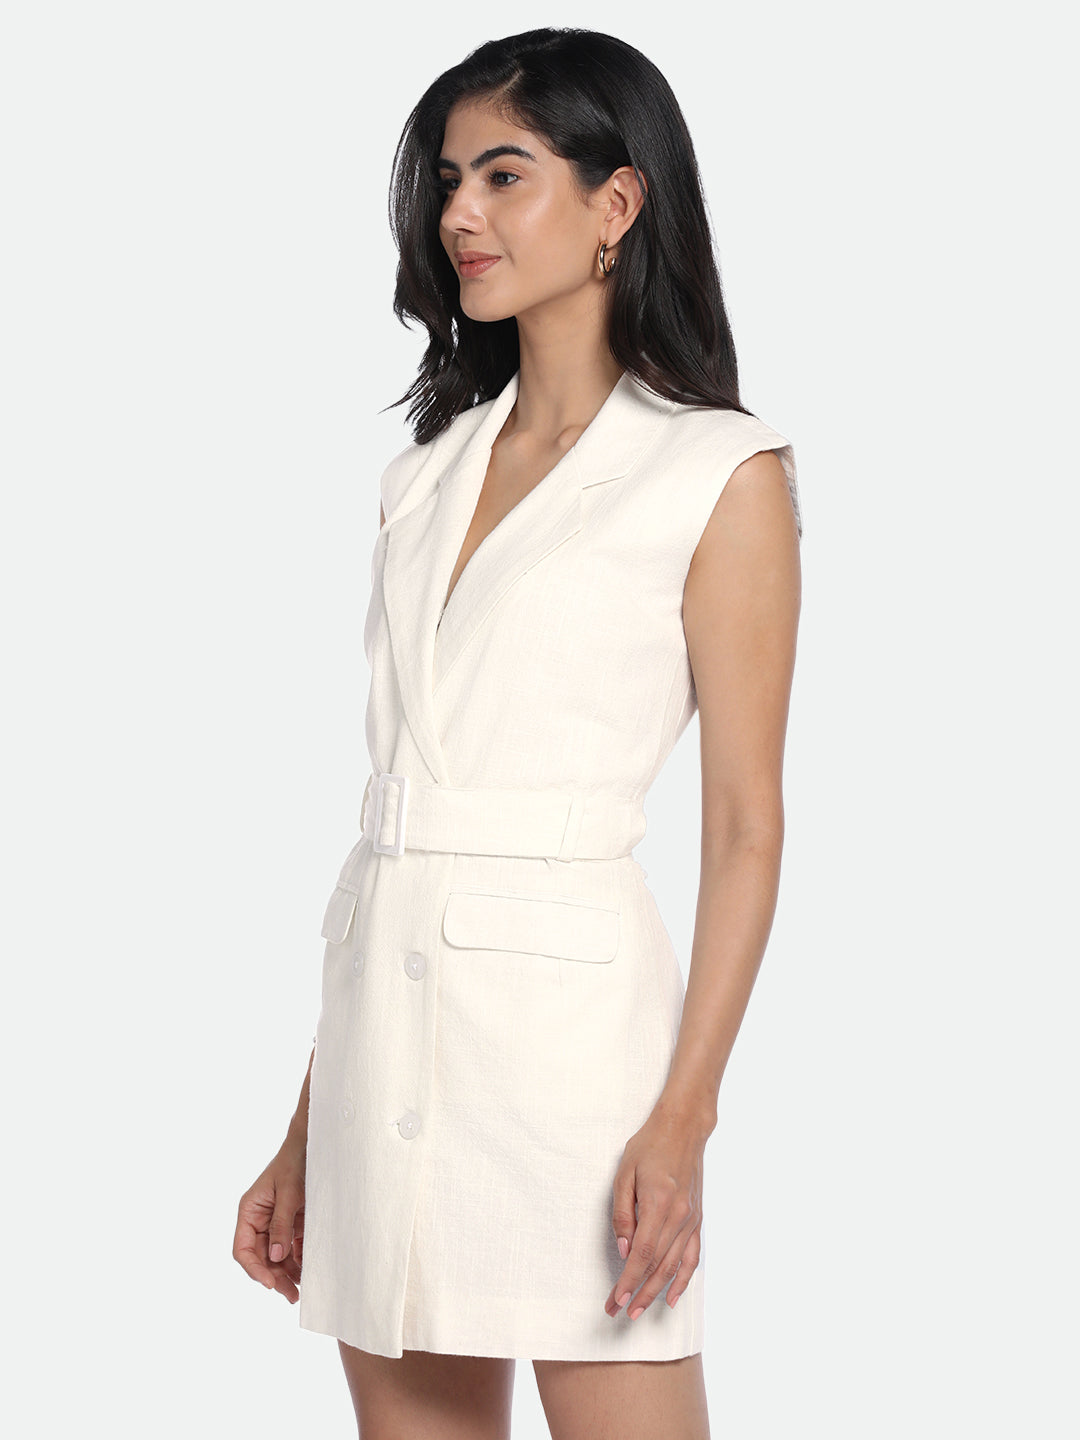 DL Woman Off-White V-Neck Belted Knee Length Blazer Dress